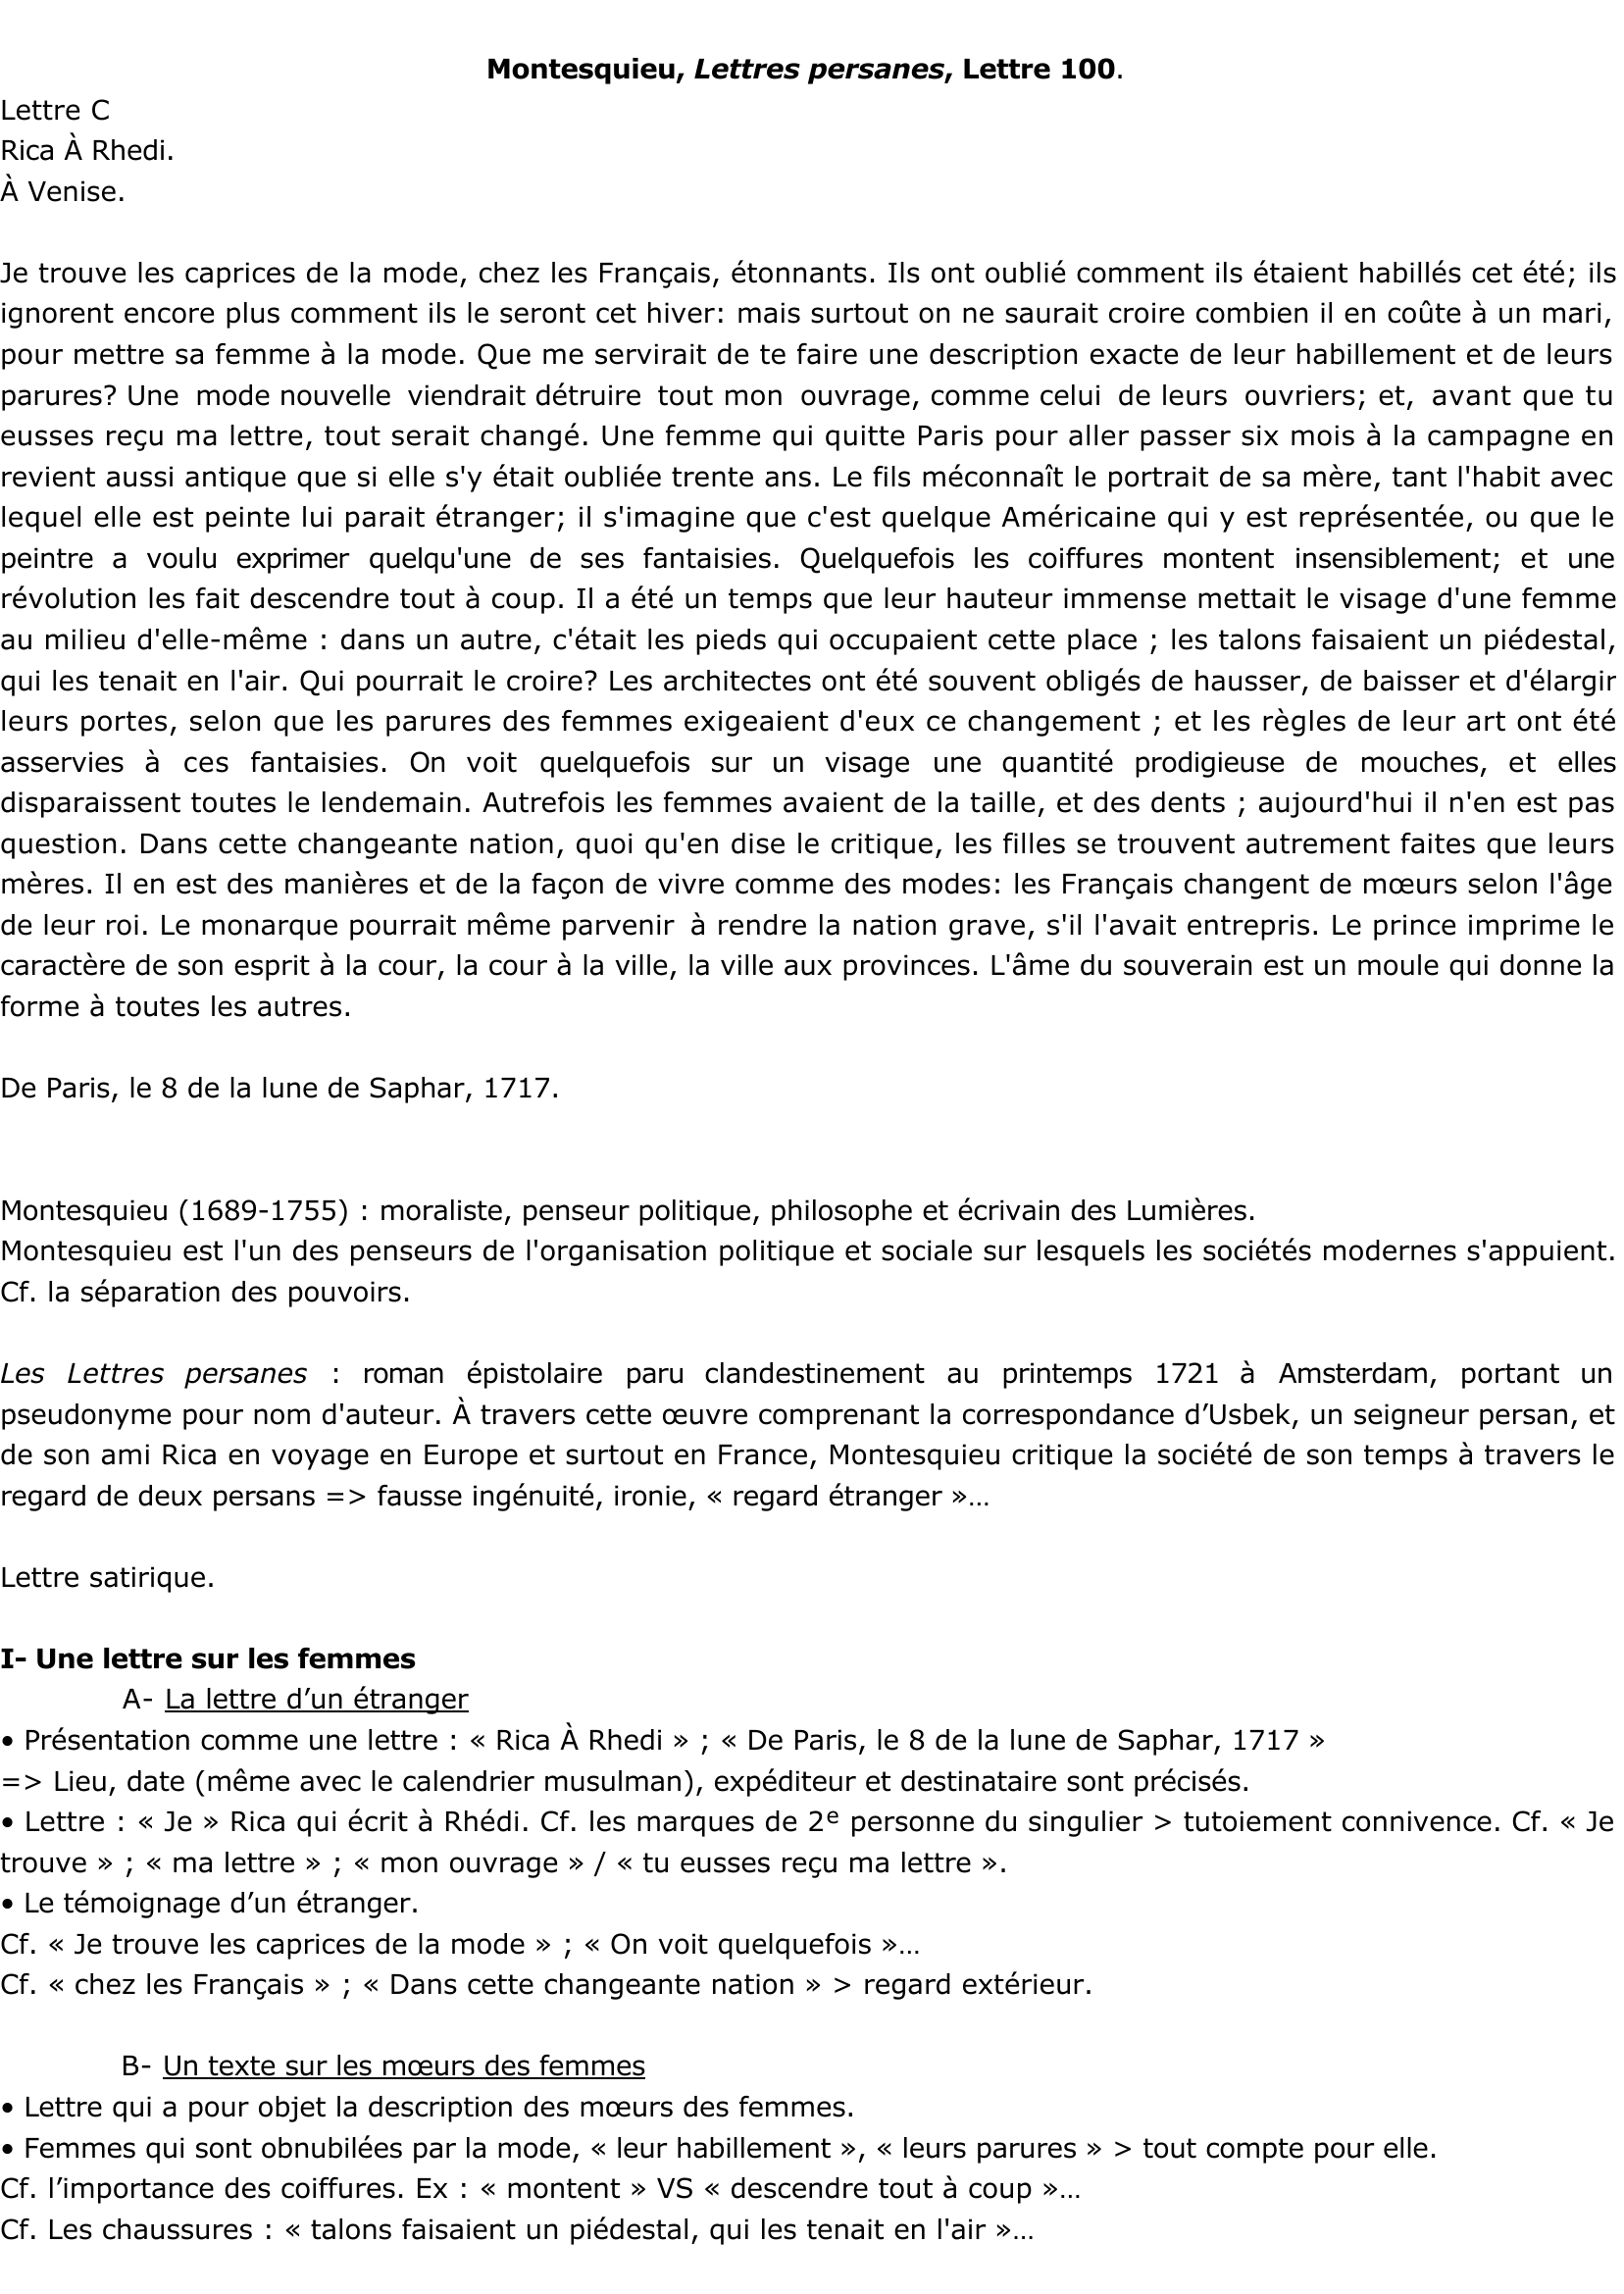 Prévisualisation du document Montesquieu, Lettres persanes - Lettre C - Lettre 100. RICA A RHEDI.